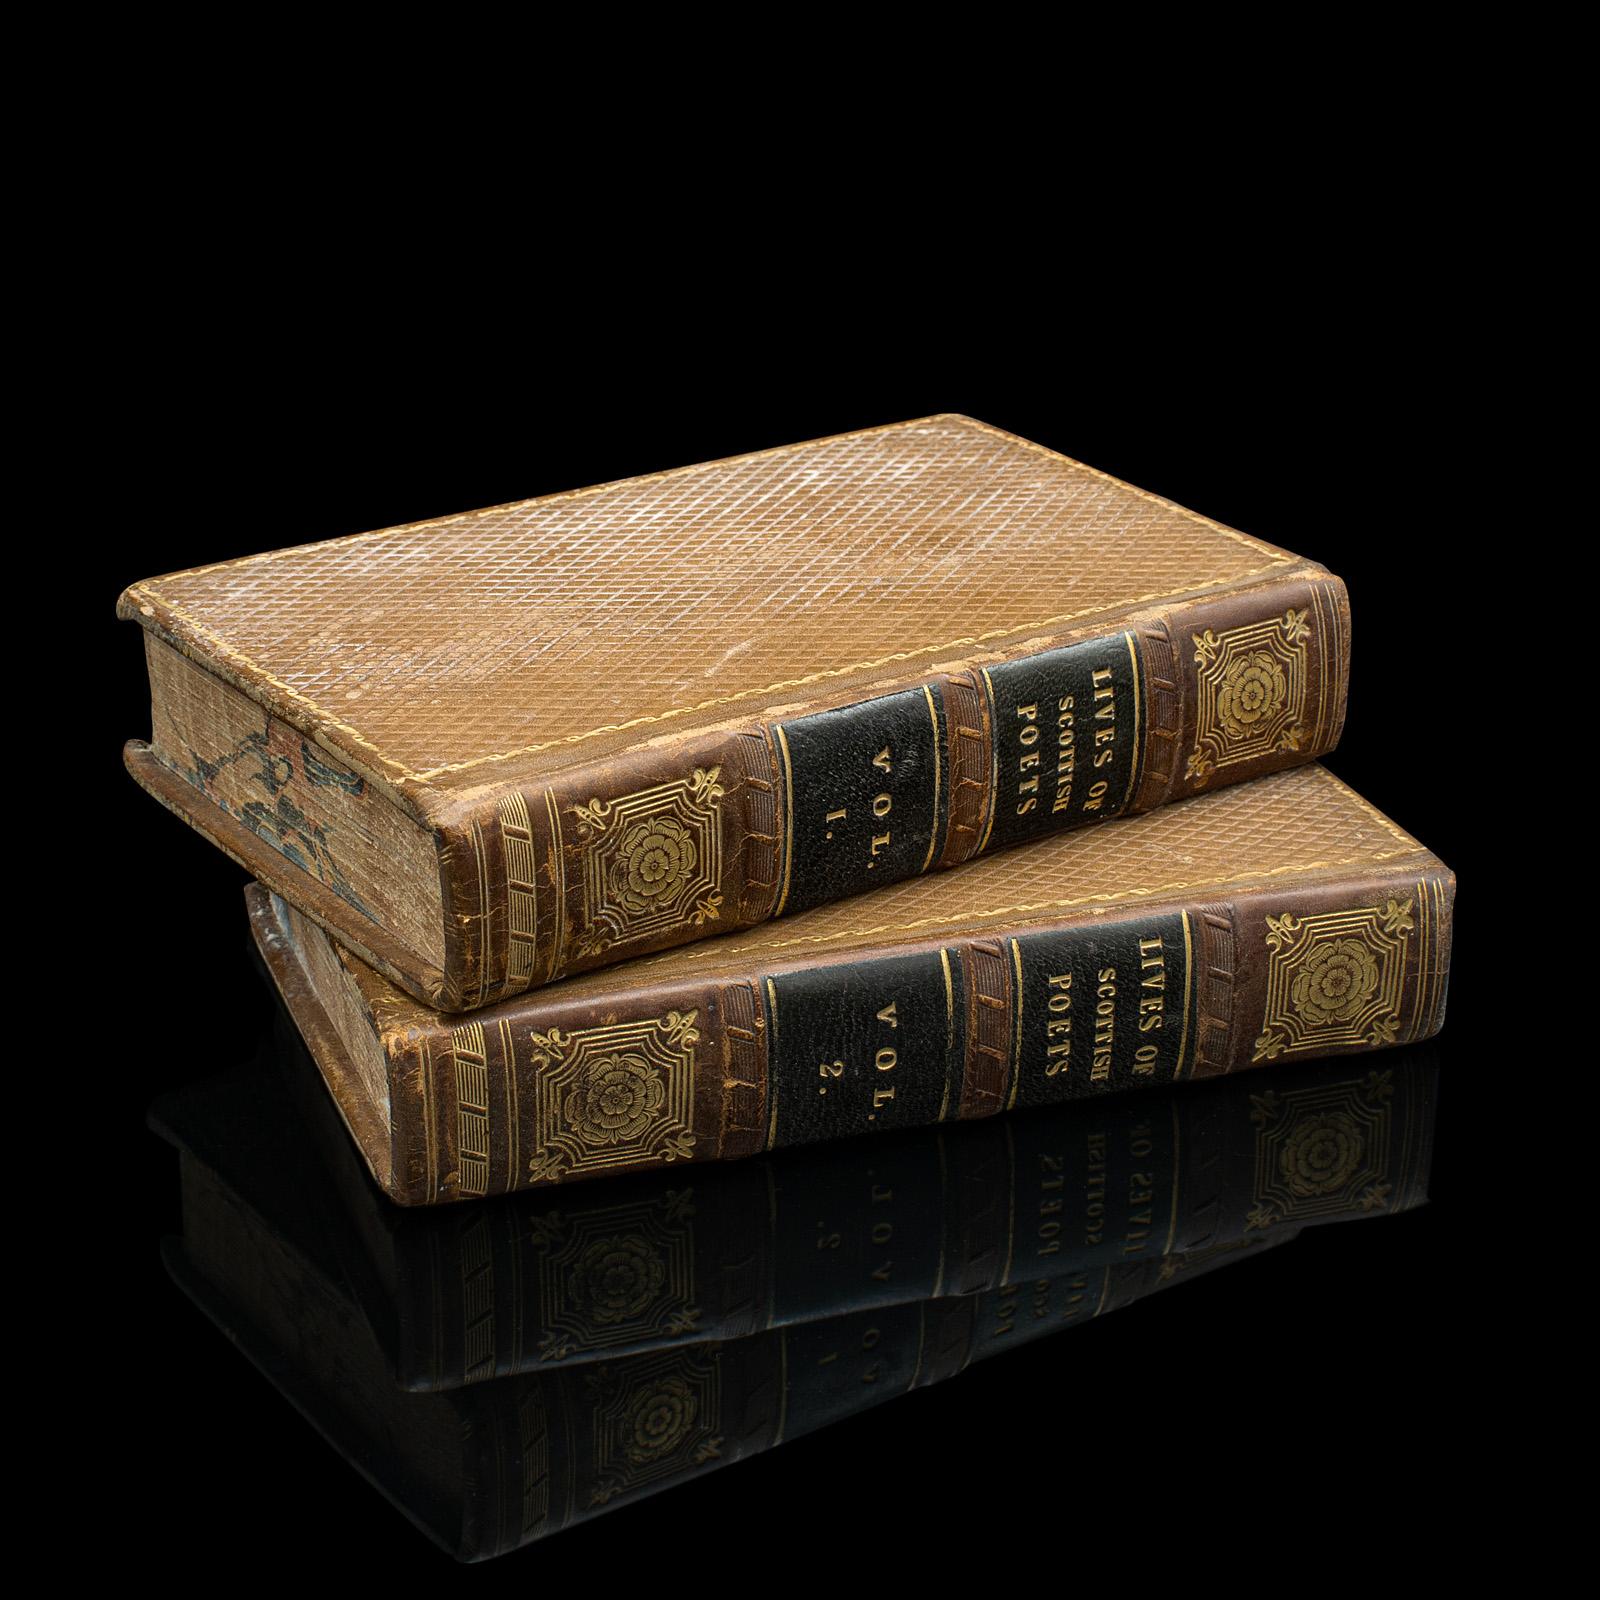 Il s'agit d'un ensemble de livres anciens en 2 volumes, The Lives of Scottish Poets. Ouvrage biographique en langue anglaise, datant de la période de la Régence, publié en 1821.

Présentée en bon état d'ancienneté, intacte et légèrement usée par le